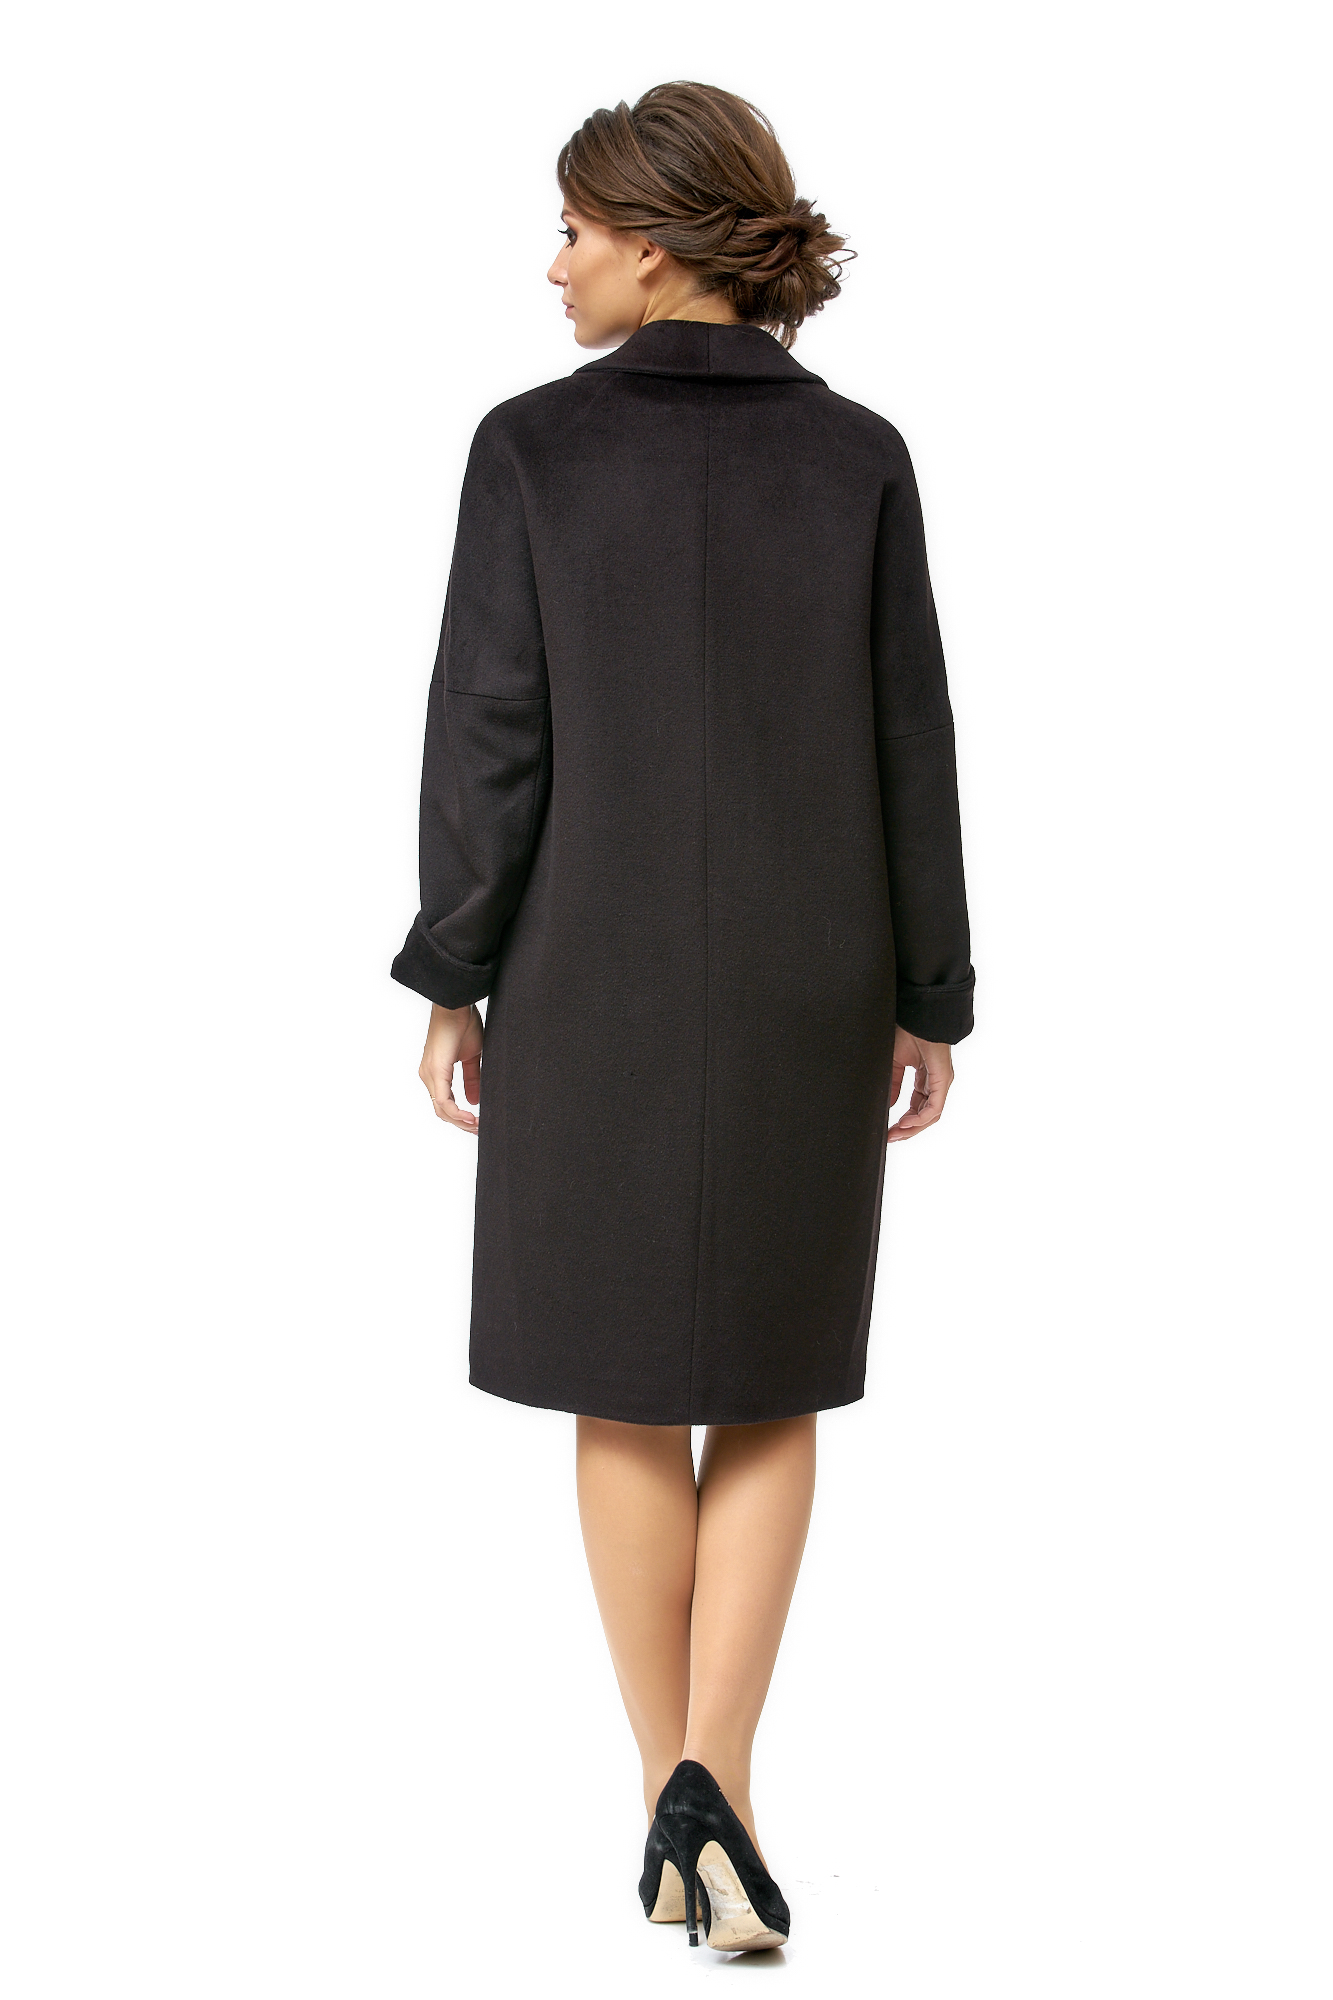 Женское пальто из текстиля с воротником 8002270-3